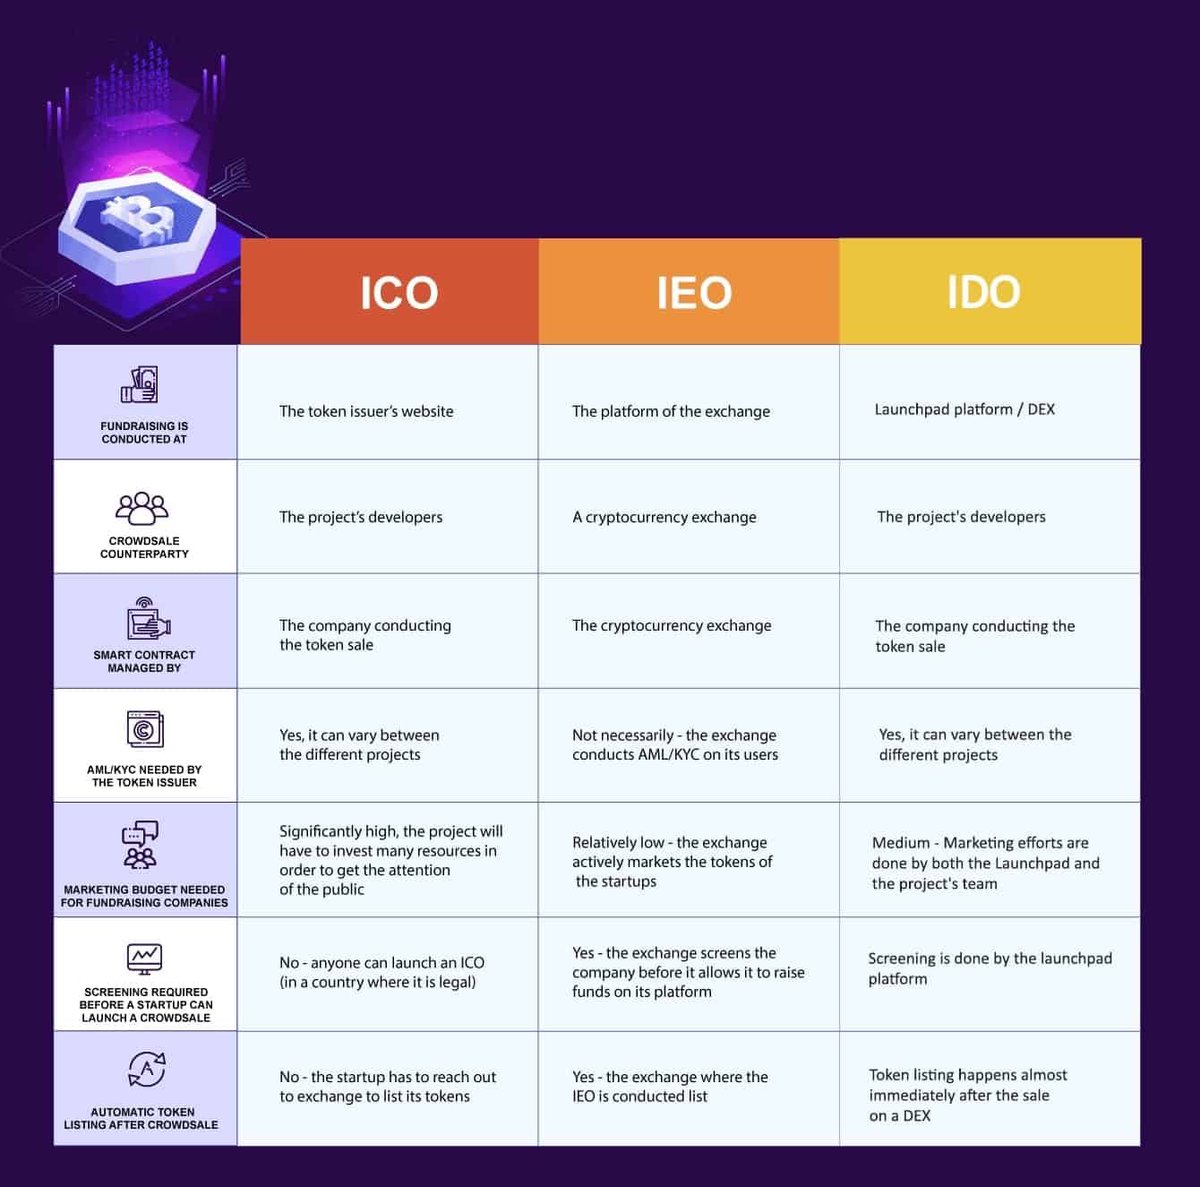 مع هذا ، يمكننا بالفعل رؤية بعض الاختلافات وبعض أوجه التشابه بين ICOs و IEOs. فيما يلي جدول مقارن شامل: